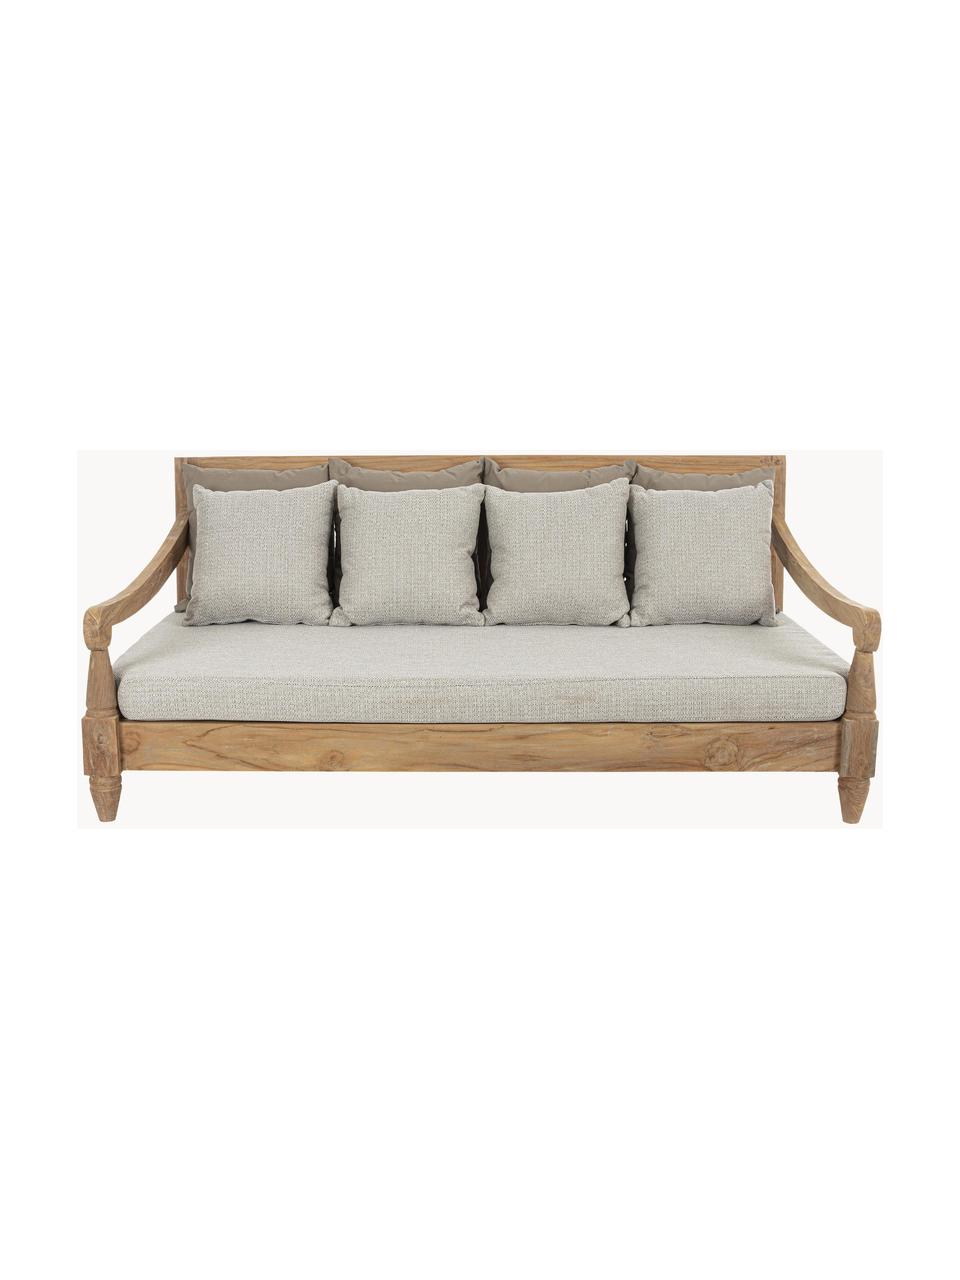 Sofa ogrodowa z drewna tekowego Bali (4-osobowa), Tapicerka: 100% poliester, odporny n, Tkanina Greige, drewno tekowe, S 190 x G 112 cm